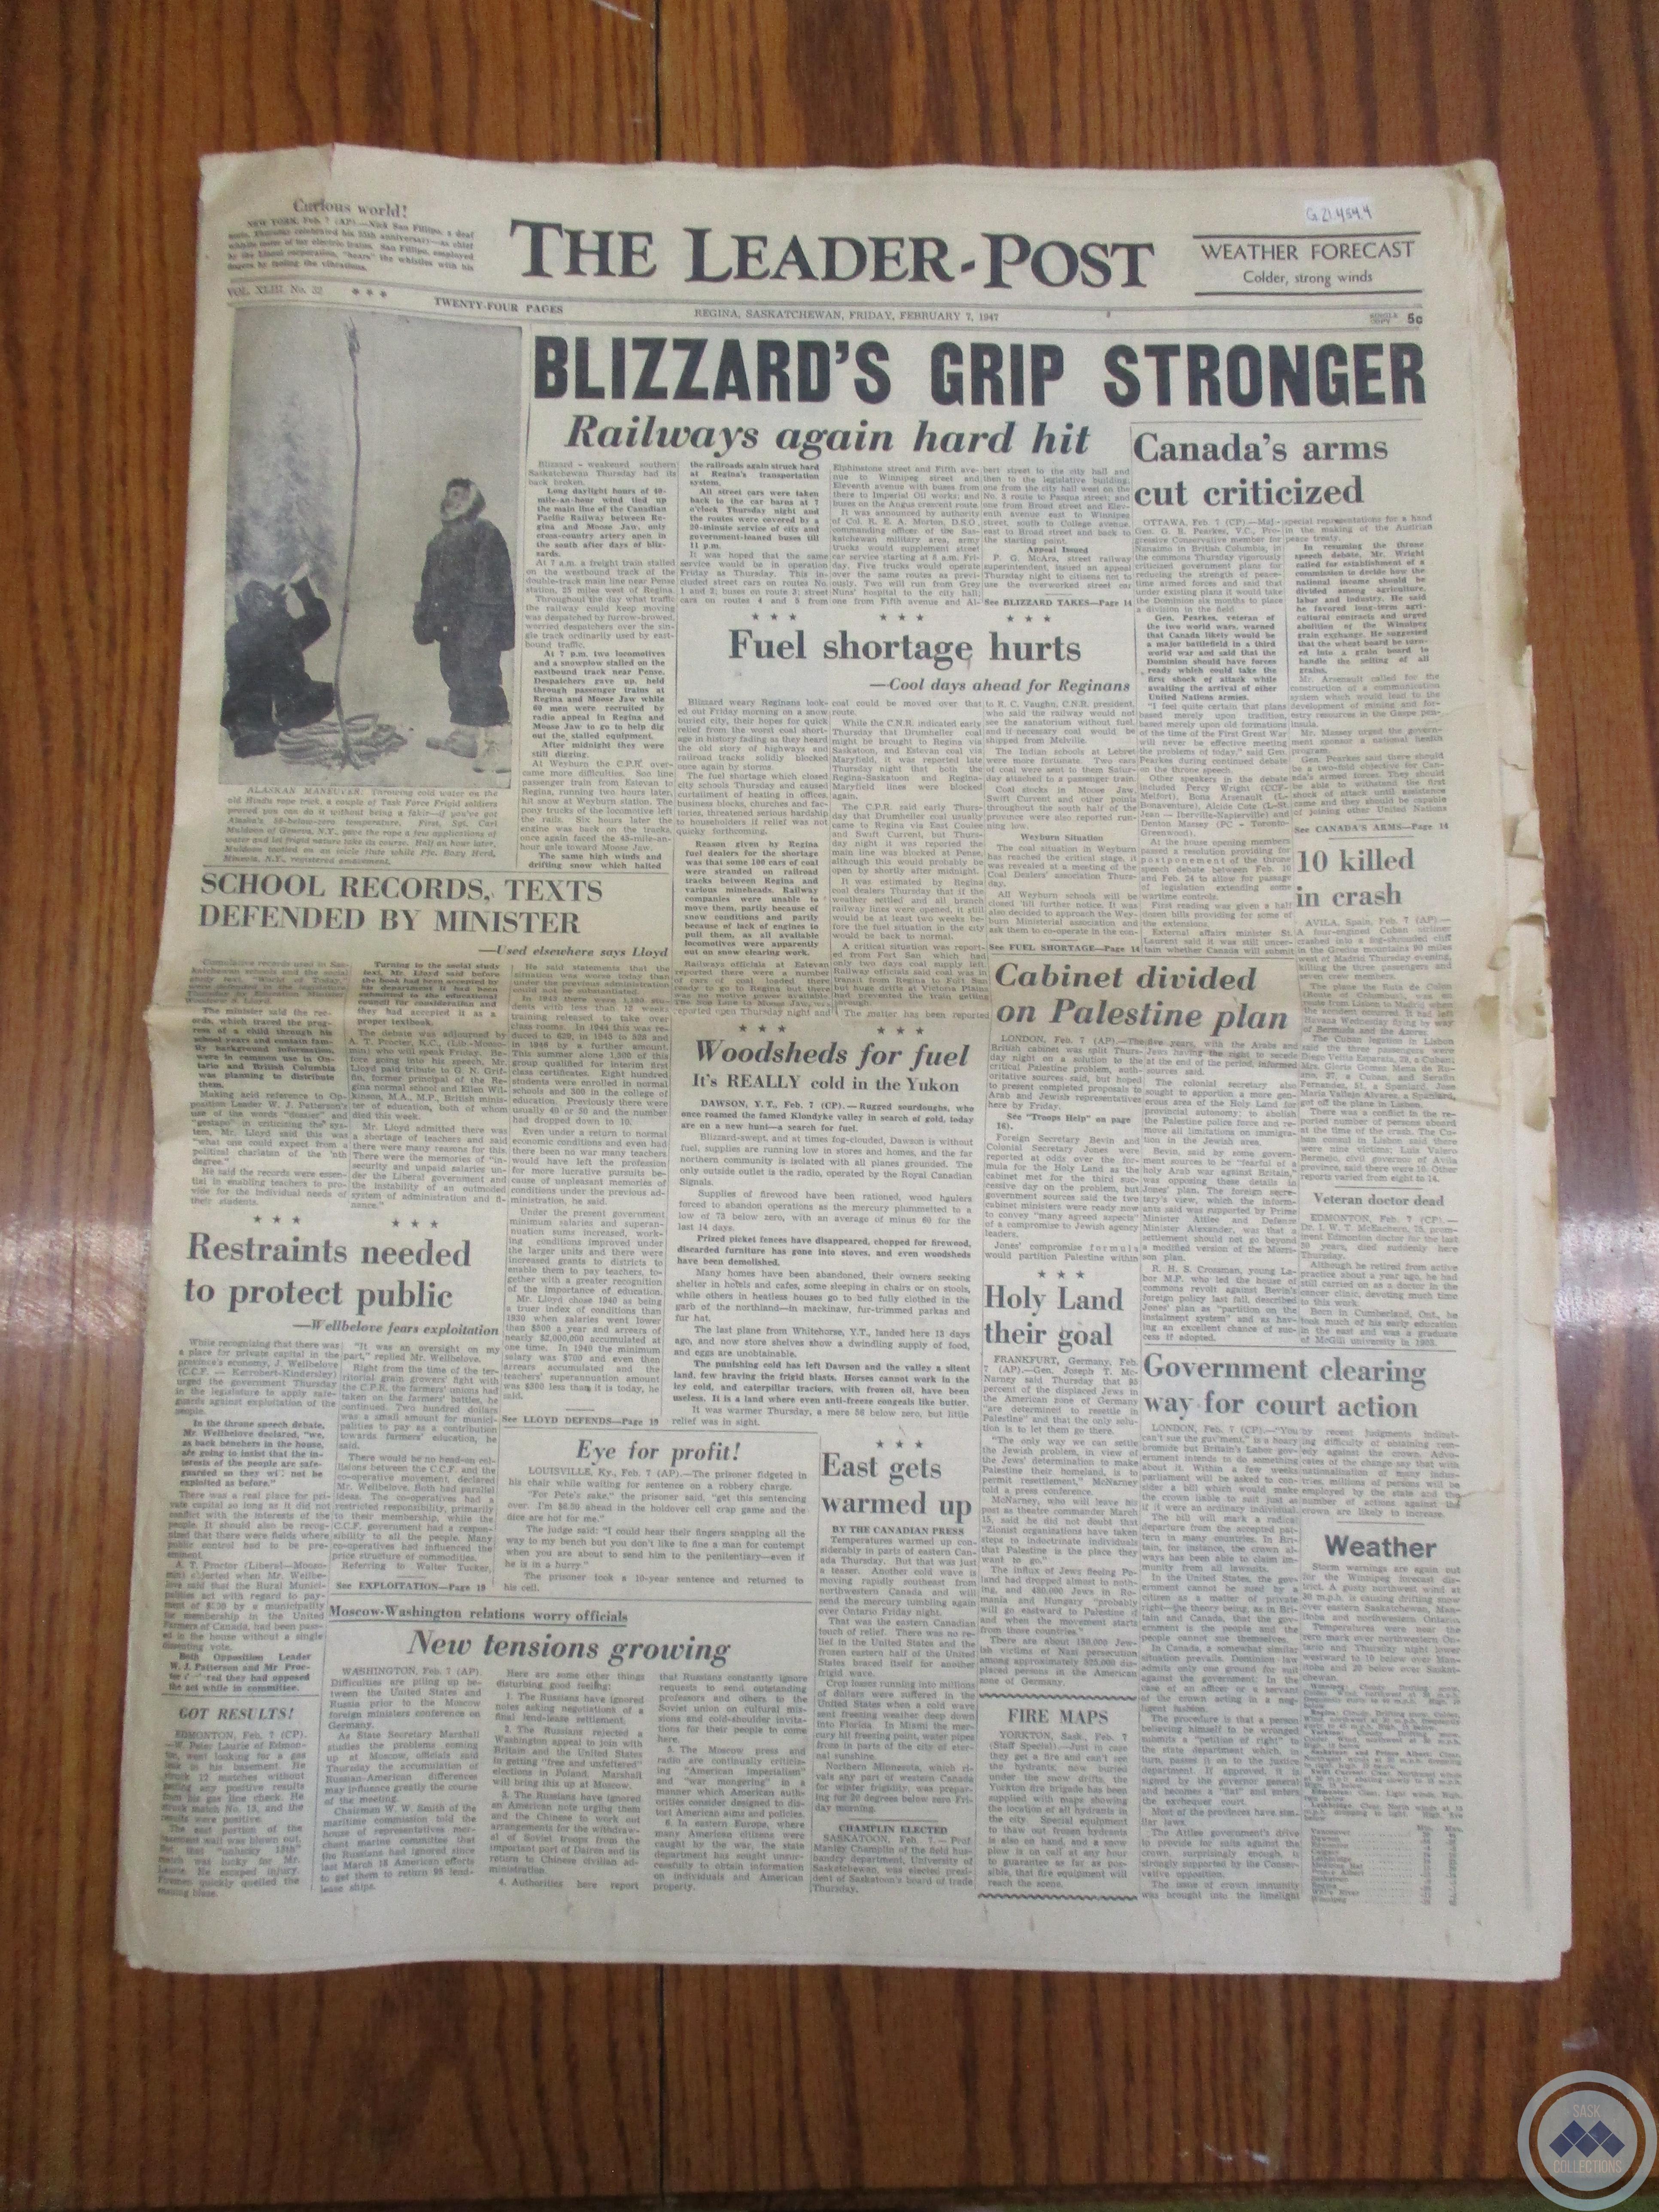 The Leader-Post: “Blizzard’s Grip Stronger” (February 7, 1947)